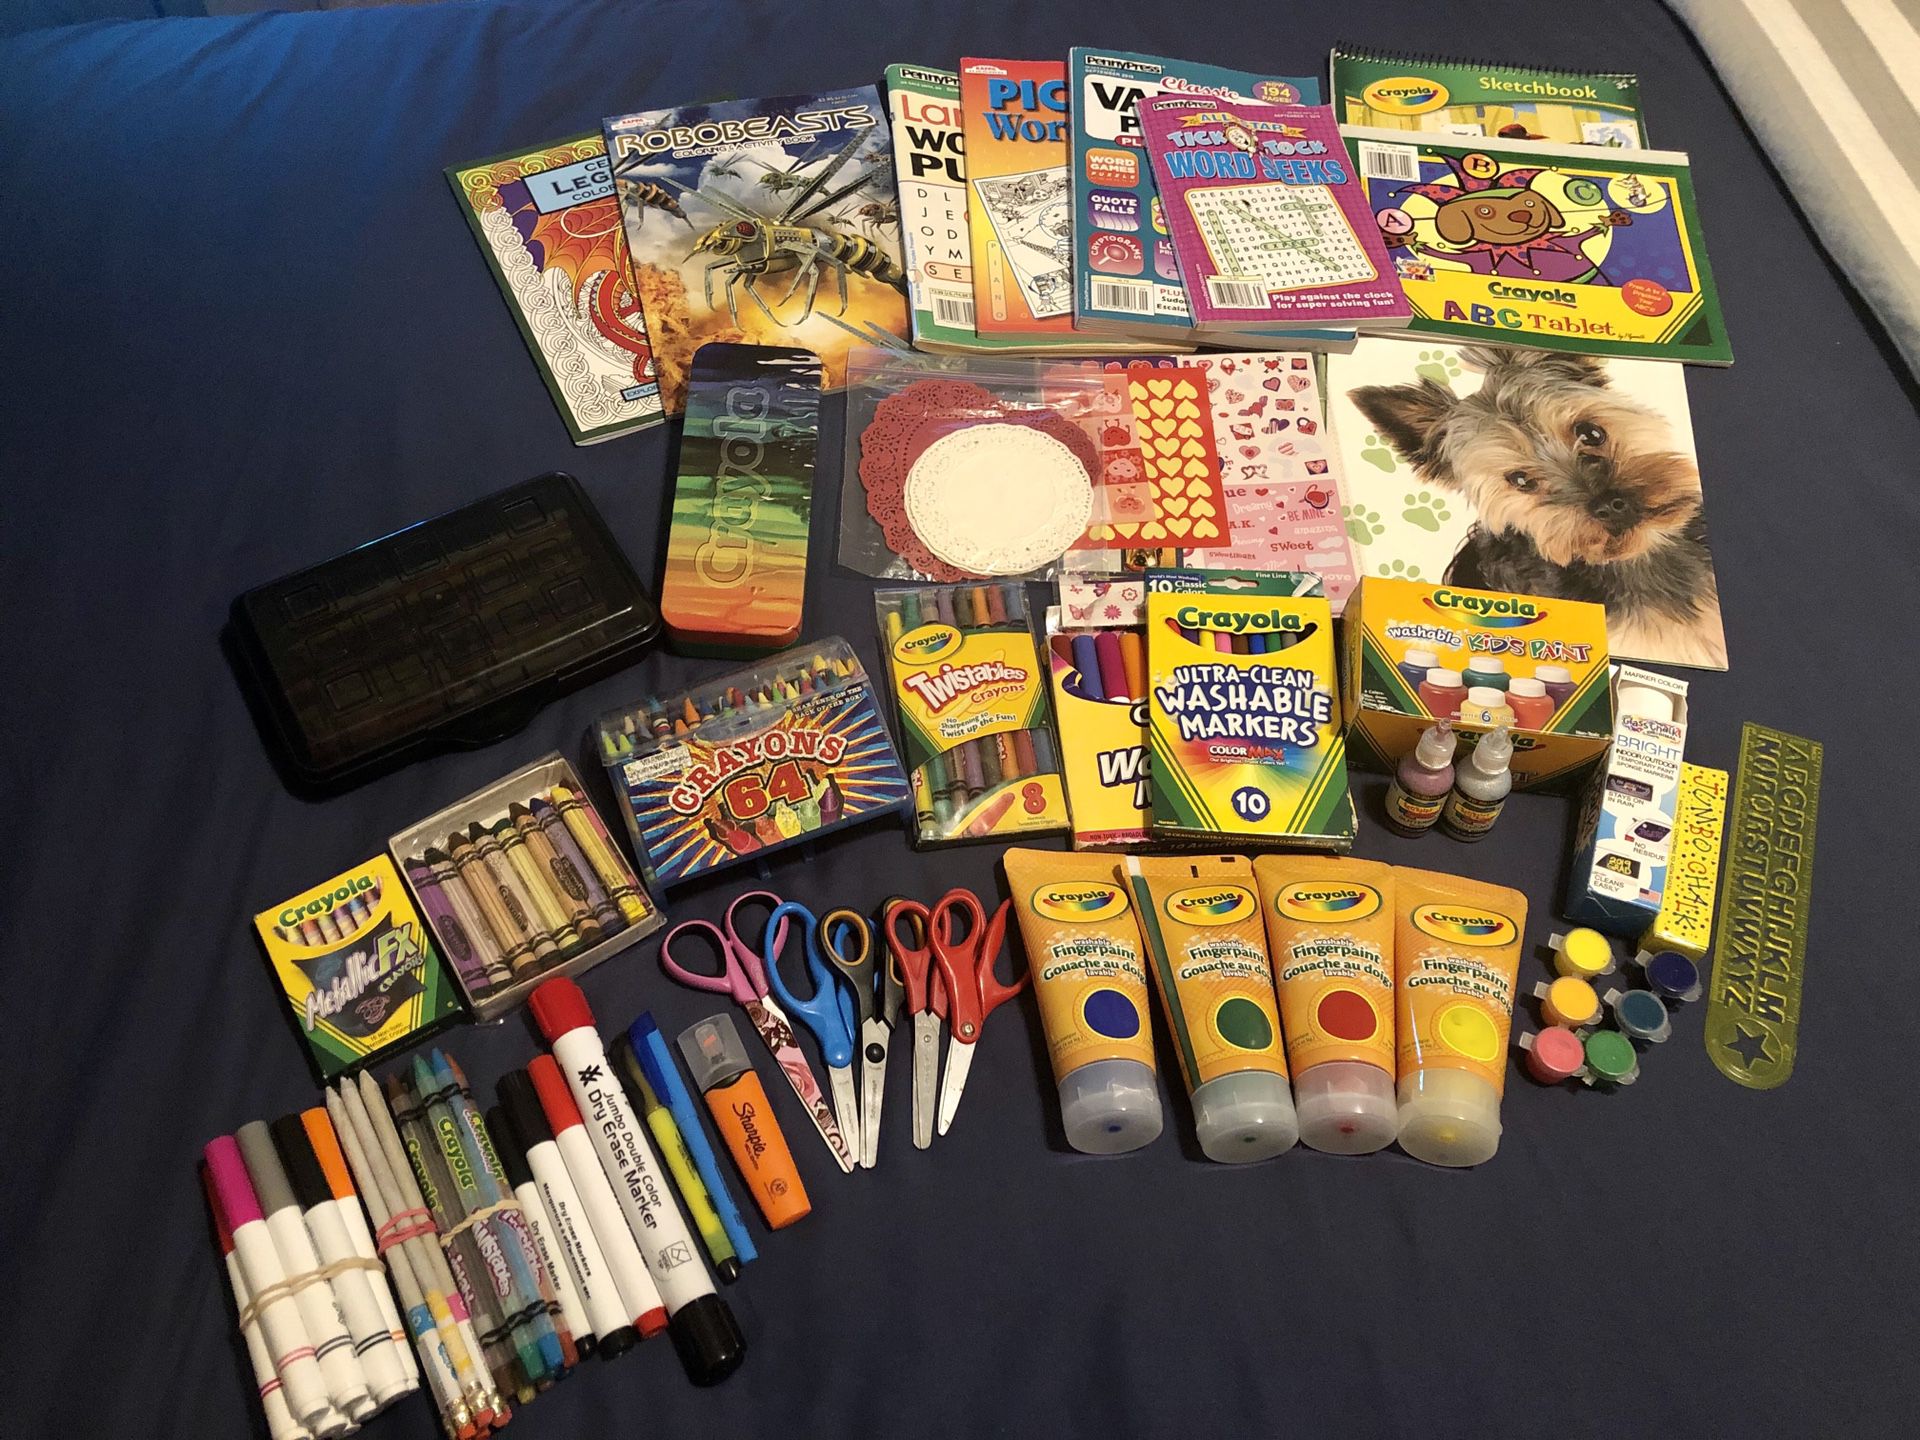 PENDING P/U - Bunch of art/school supplies - FREE